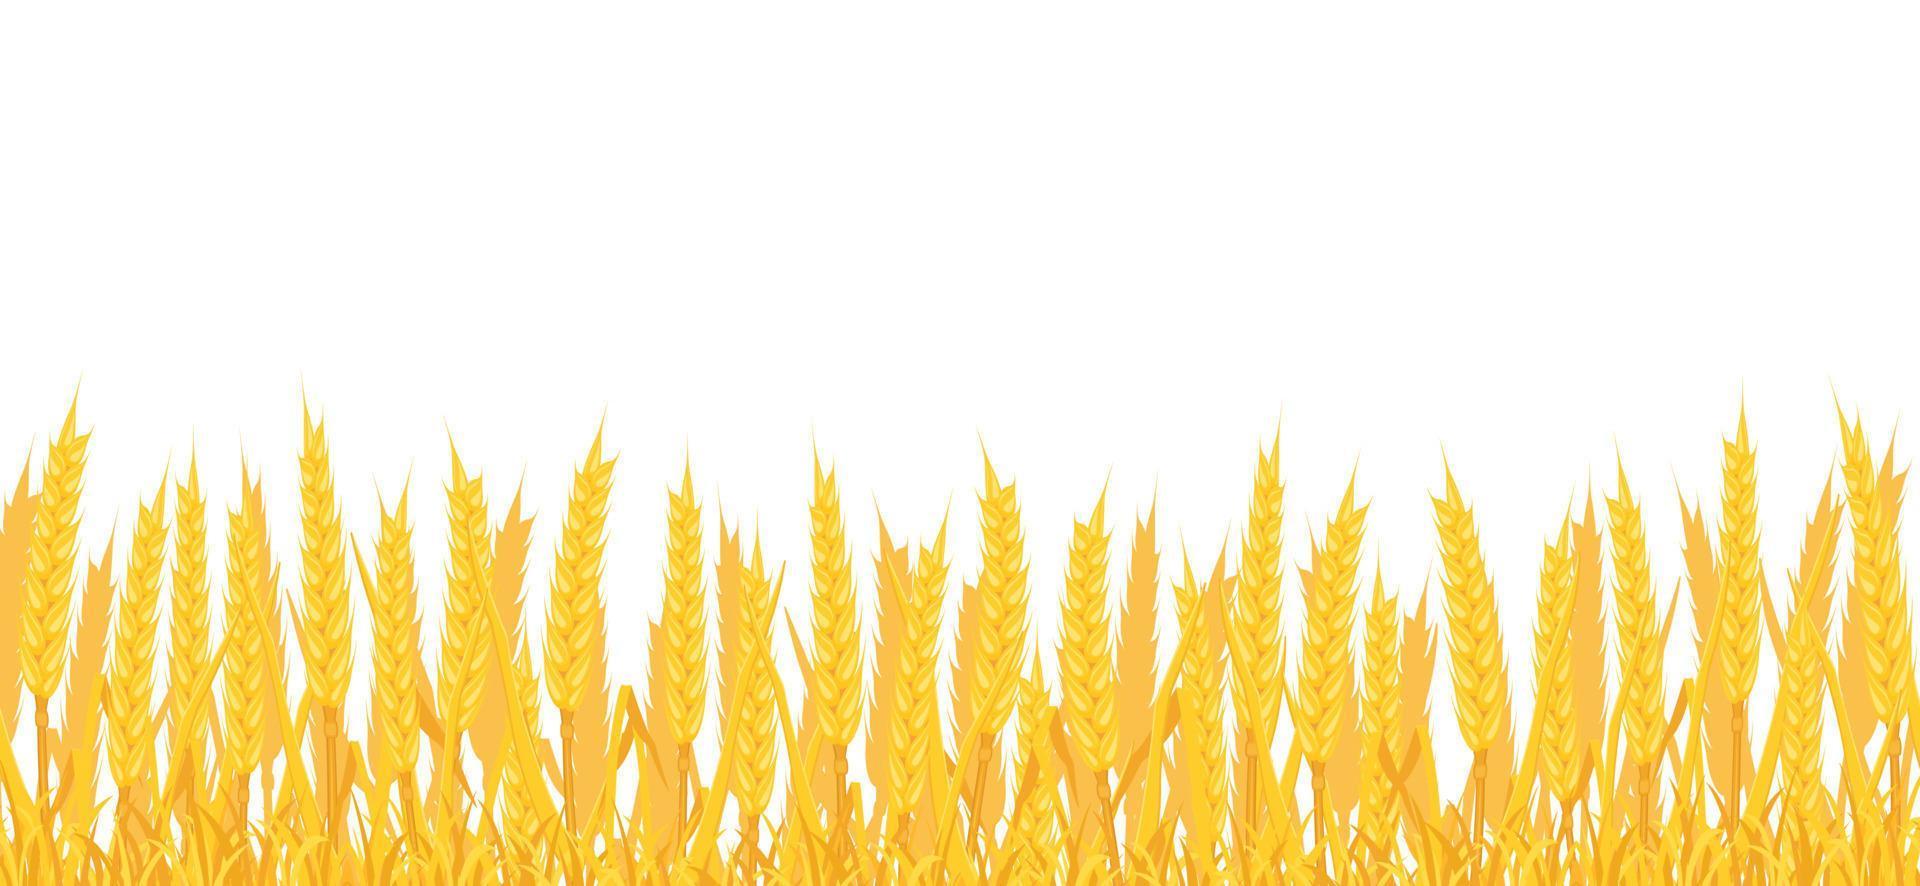 Hintergrund des Feldes mit Weizen. Rand mit gelben Stacheln. vektor